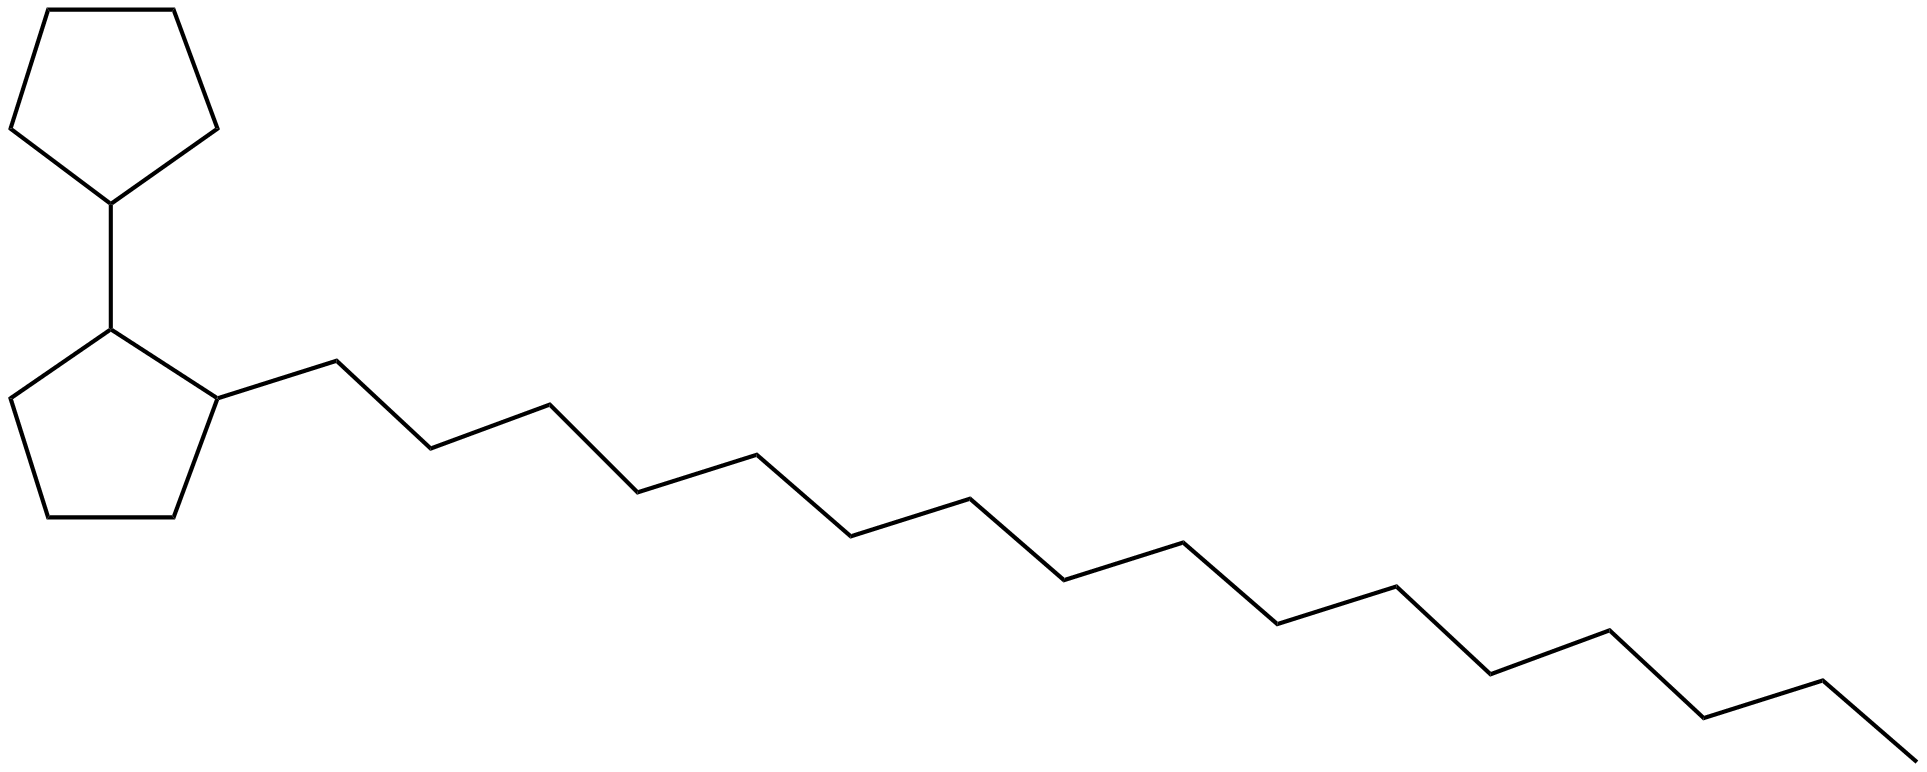 Image of 2-hexadecyl-1,1'-bicyclopentyl